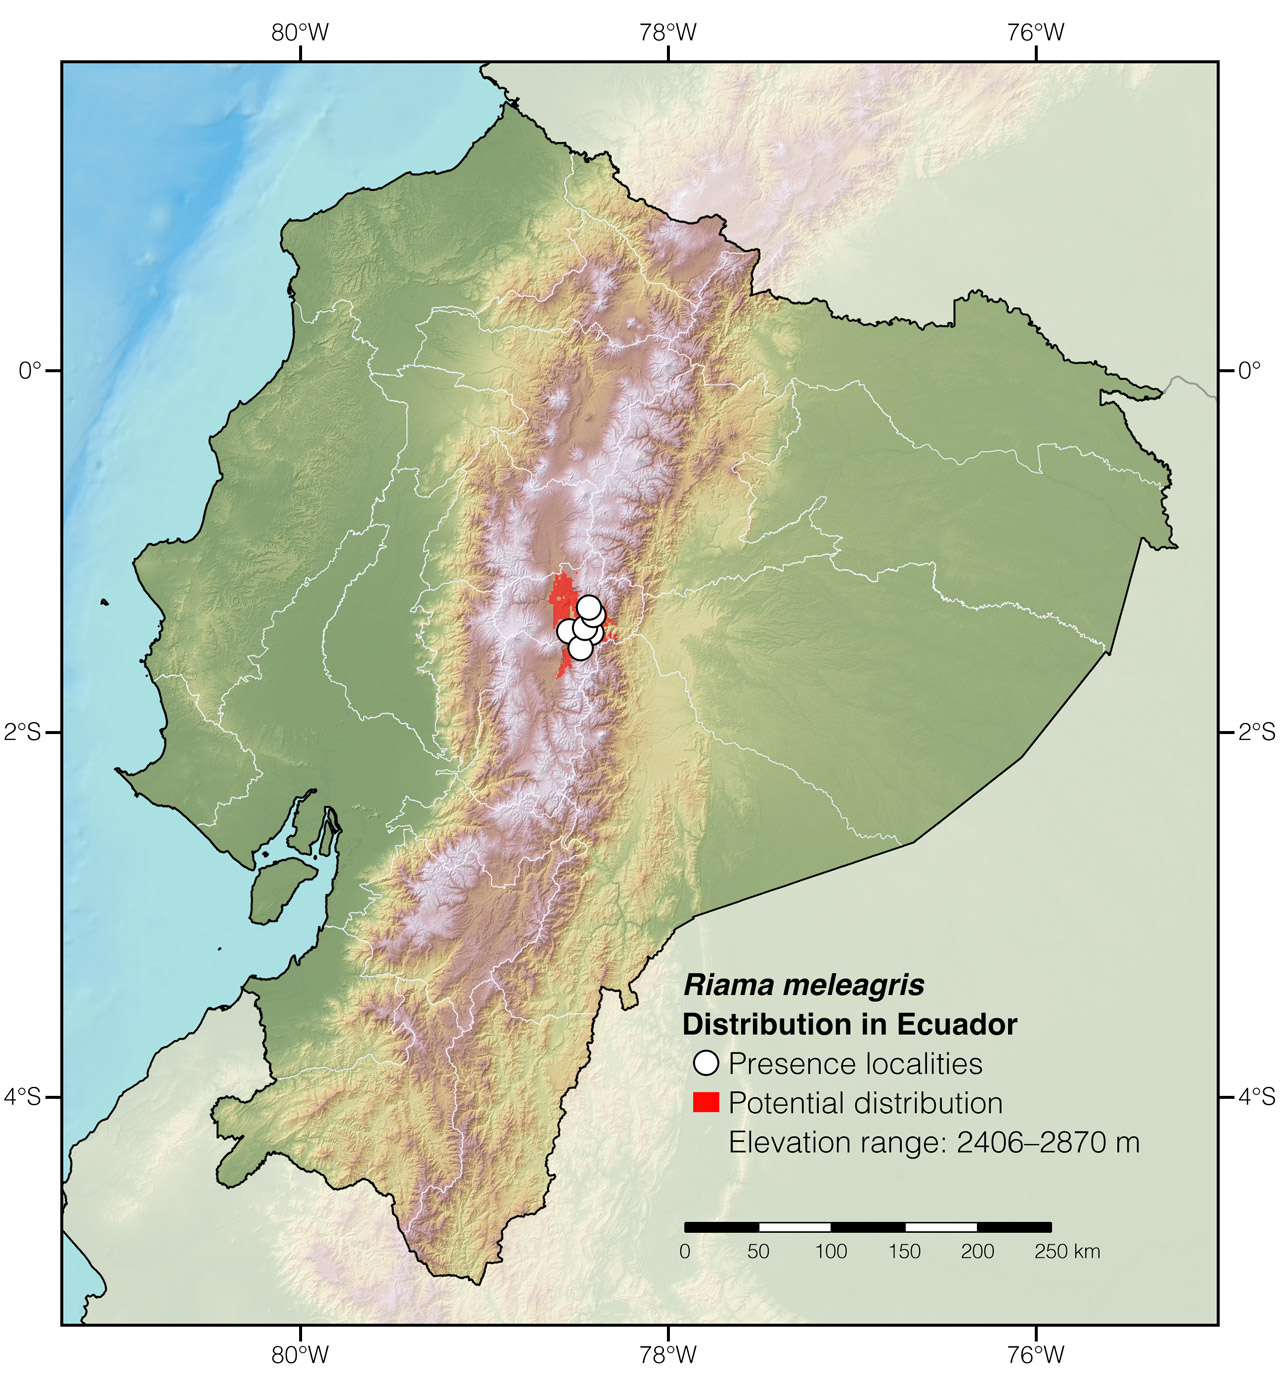 Distribution of Riama meleagris in Ecuador